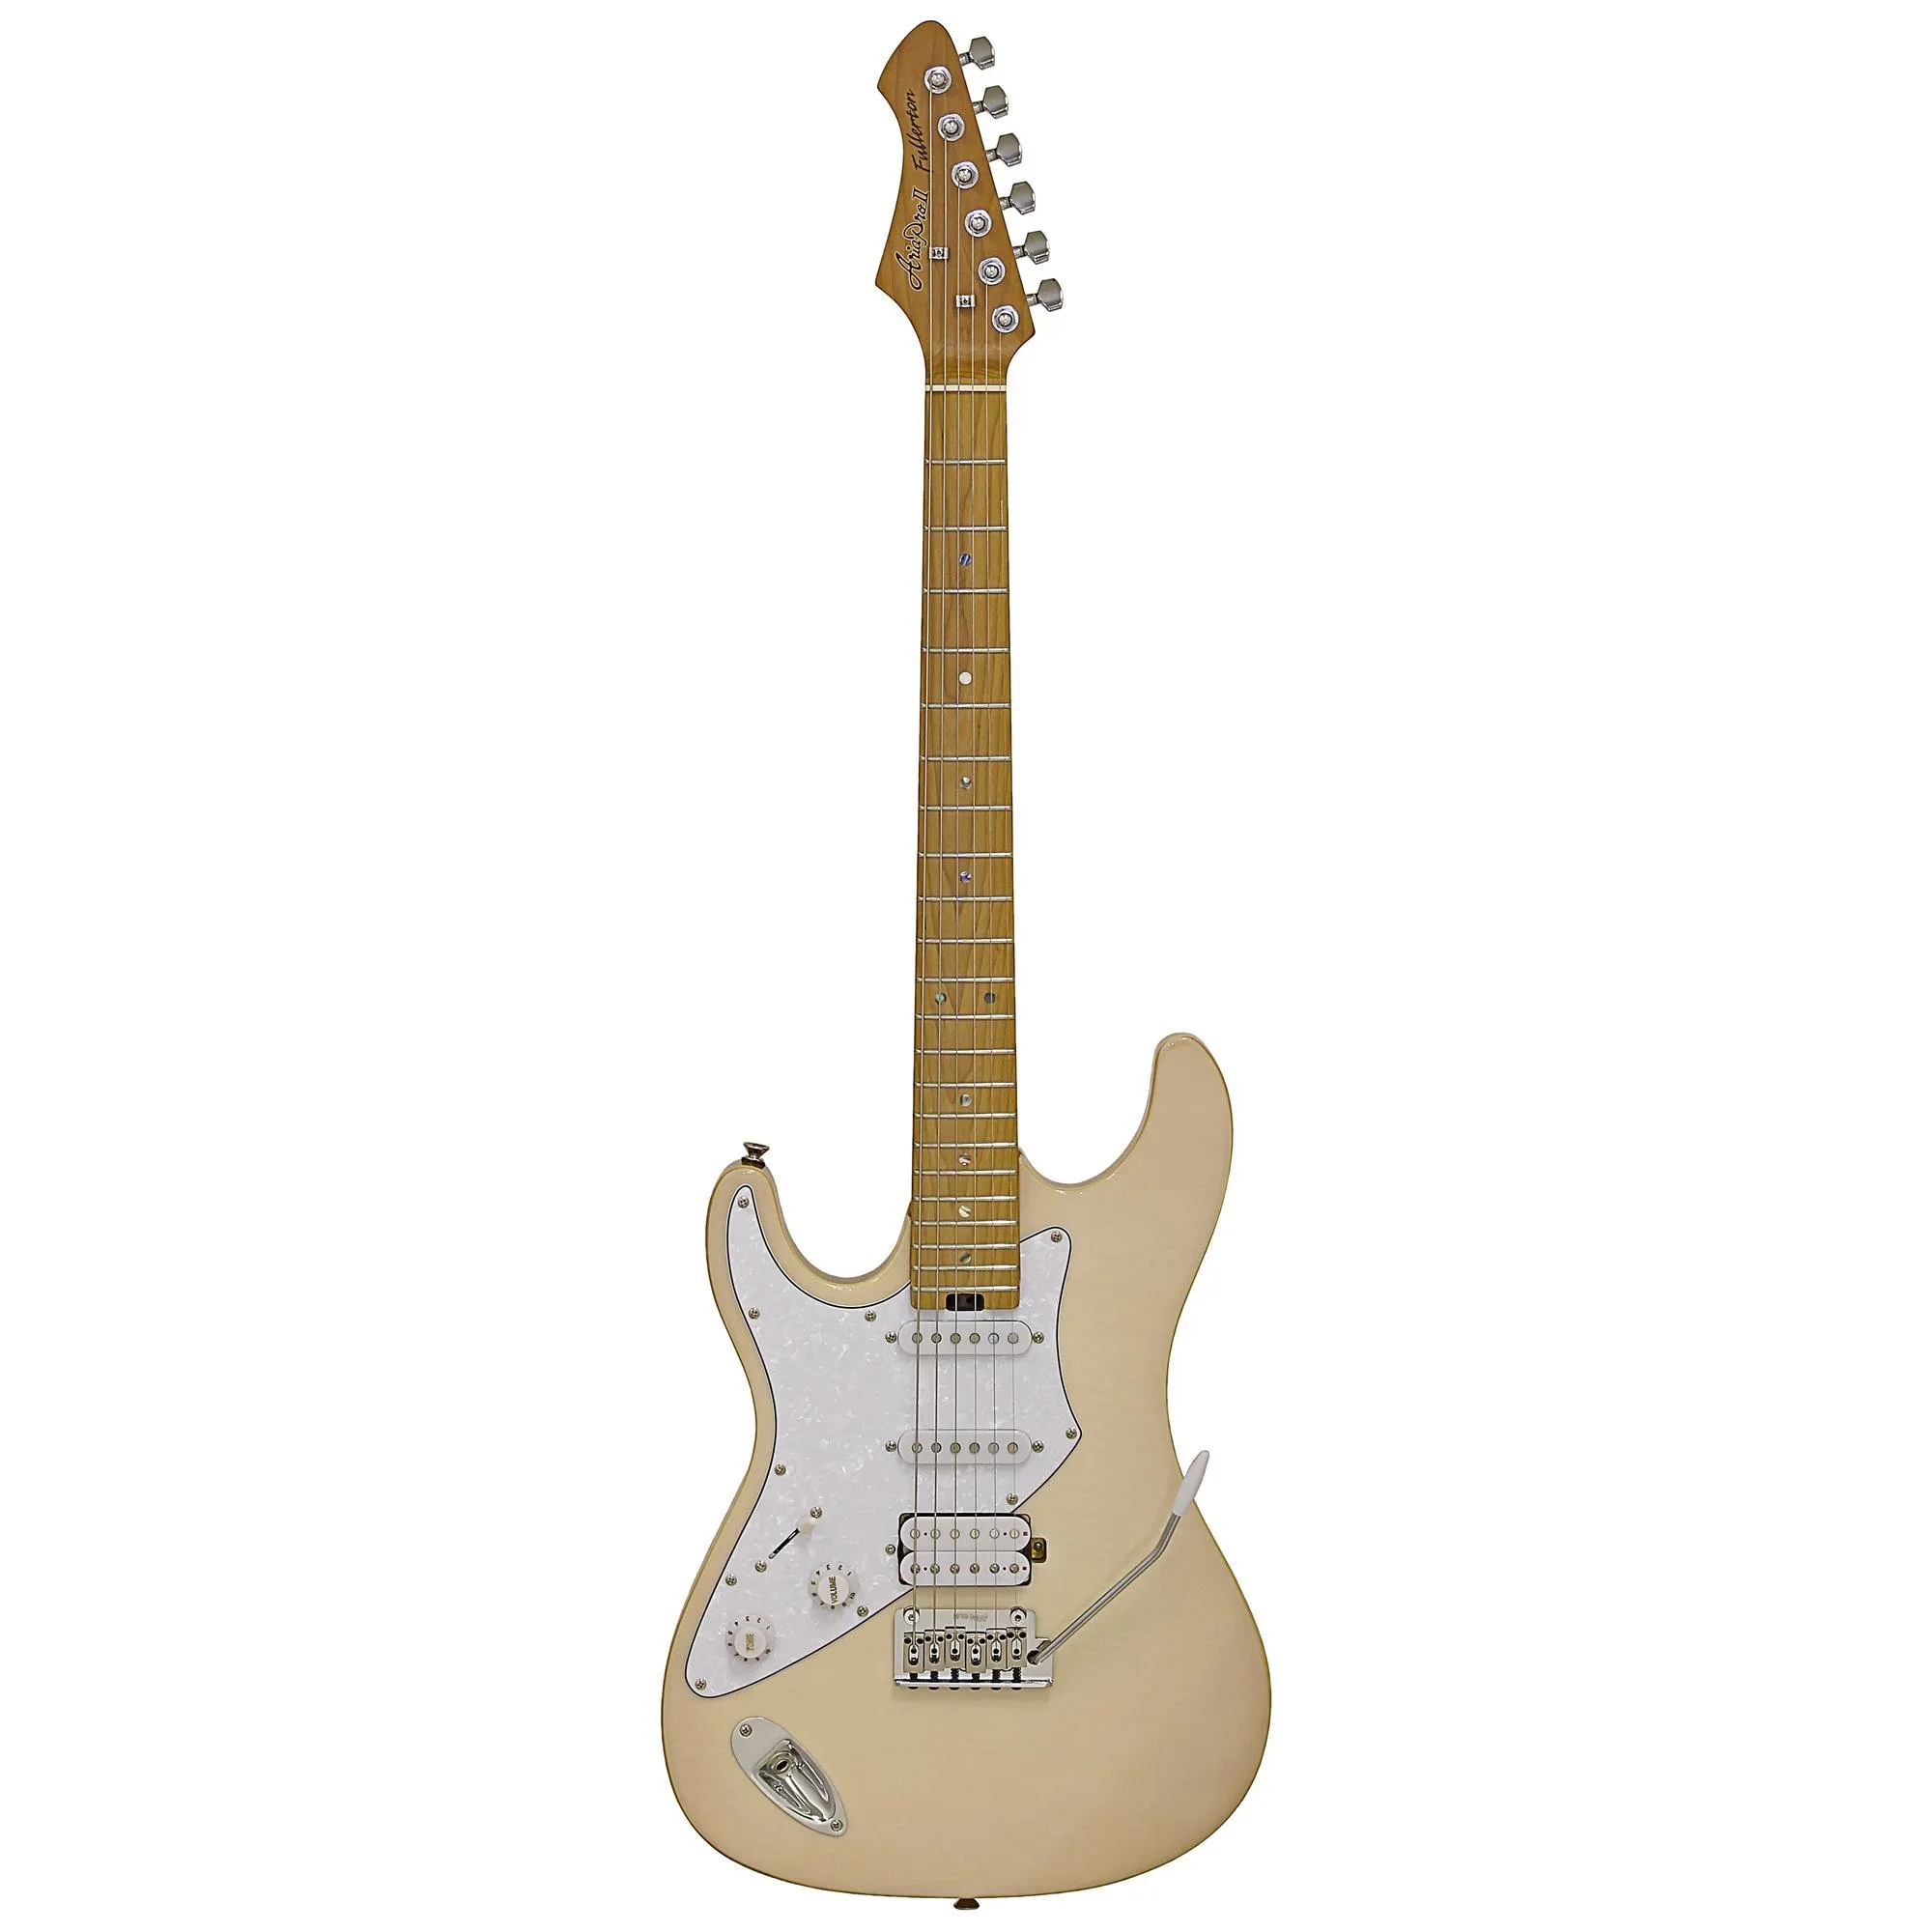 Guitarra Aria Pro II 714-JH Fullerton Marble White por 0,00 à vista no boleto/pix ou parcele em até 1x sem juros. Compre na loja Mundomax!